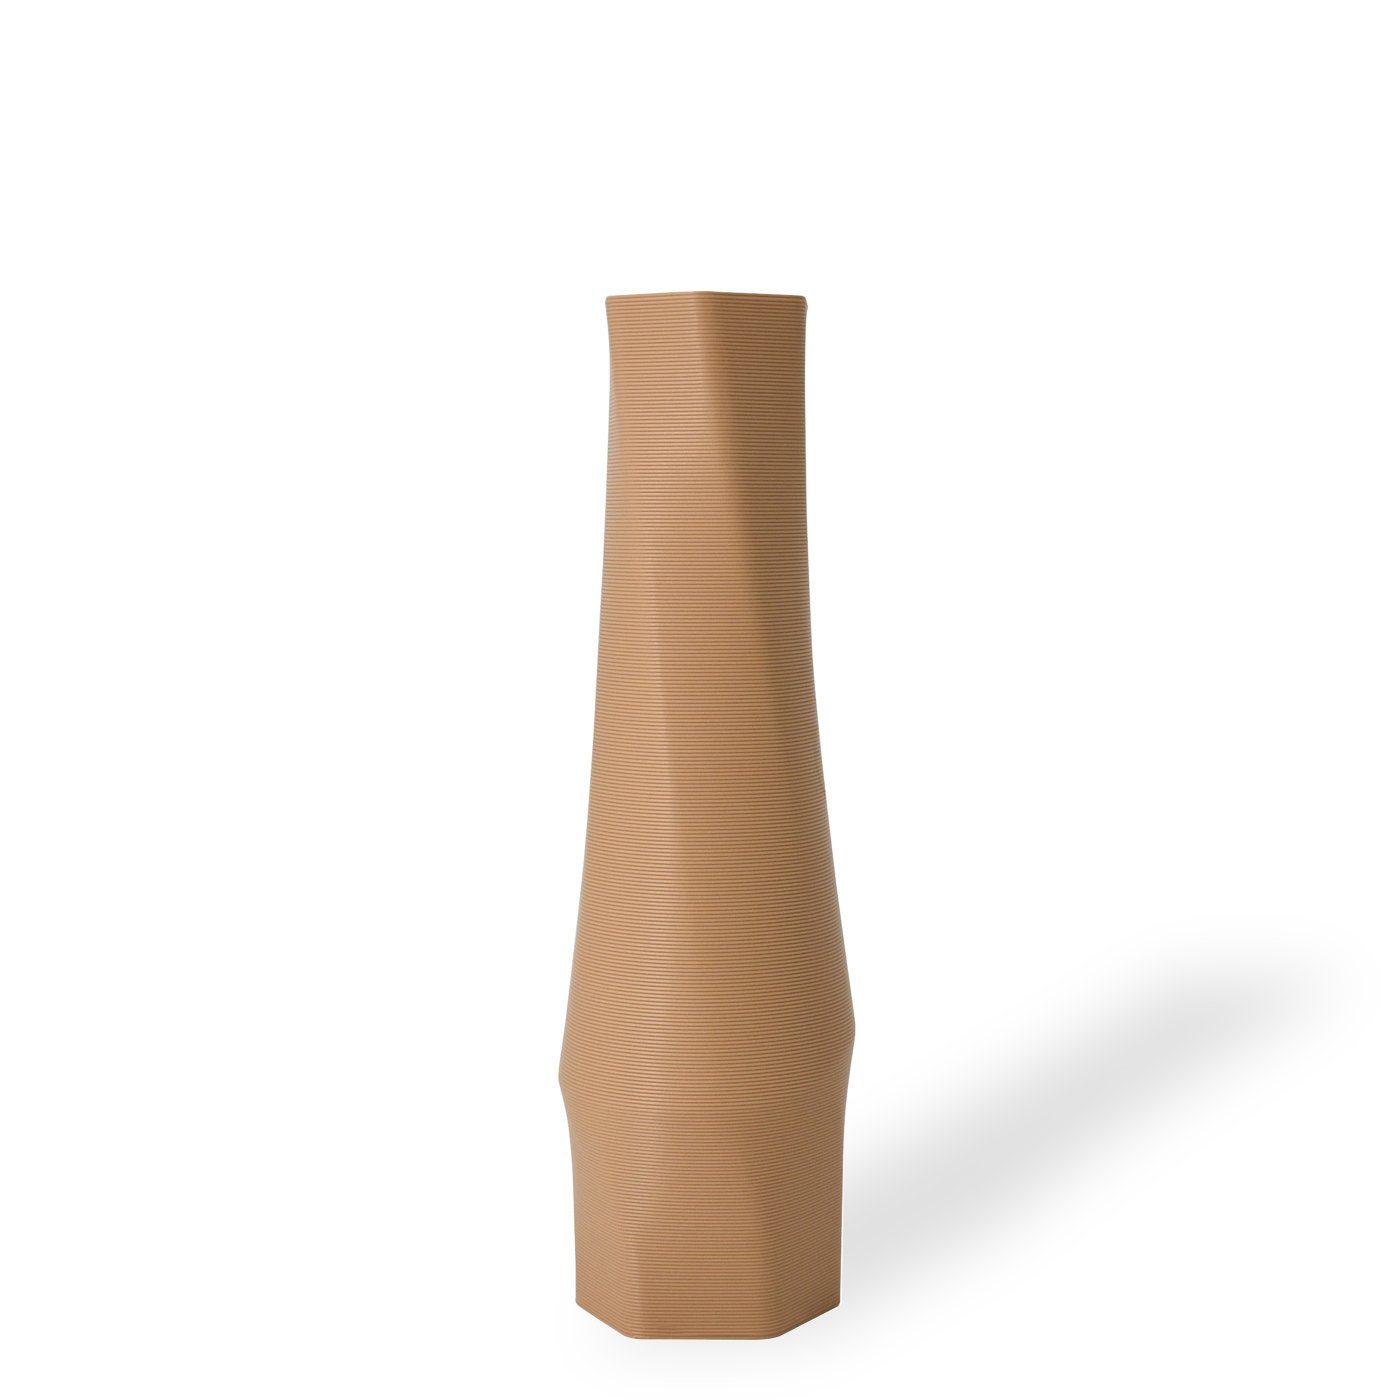 Decorations 1 innerhalb Wasserdicht; Materials - Struktur hexagon viele des Vasen, 100% Dekovase (Rillung) the vase Shapes (basic), Farben, - 3D 3D-Druck Vase), Leichte (Einzelmodell, Erdnussbraun